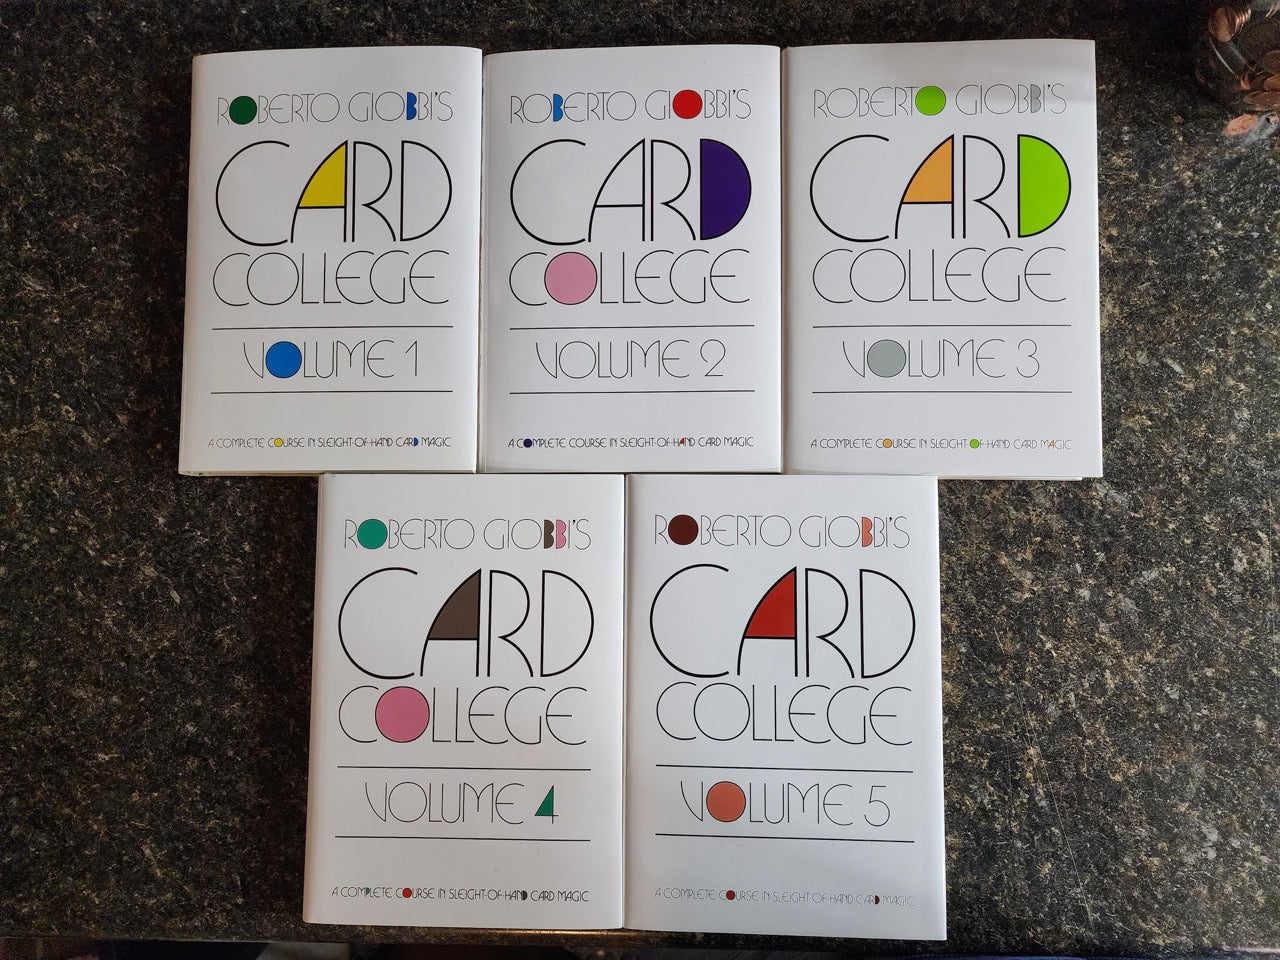 Card College Vols.1-5 - Roberto Giobbi